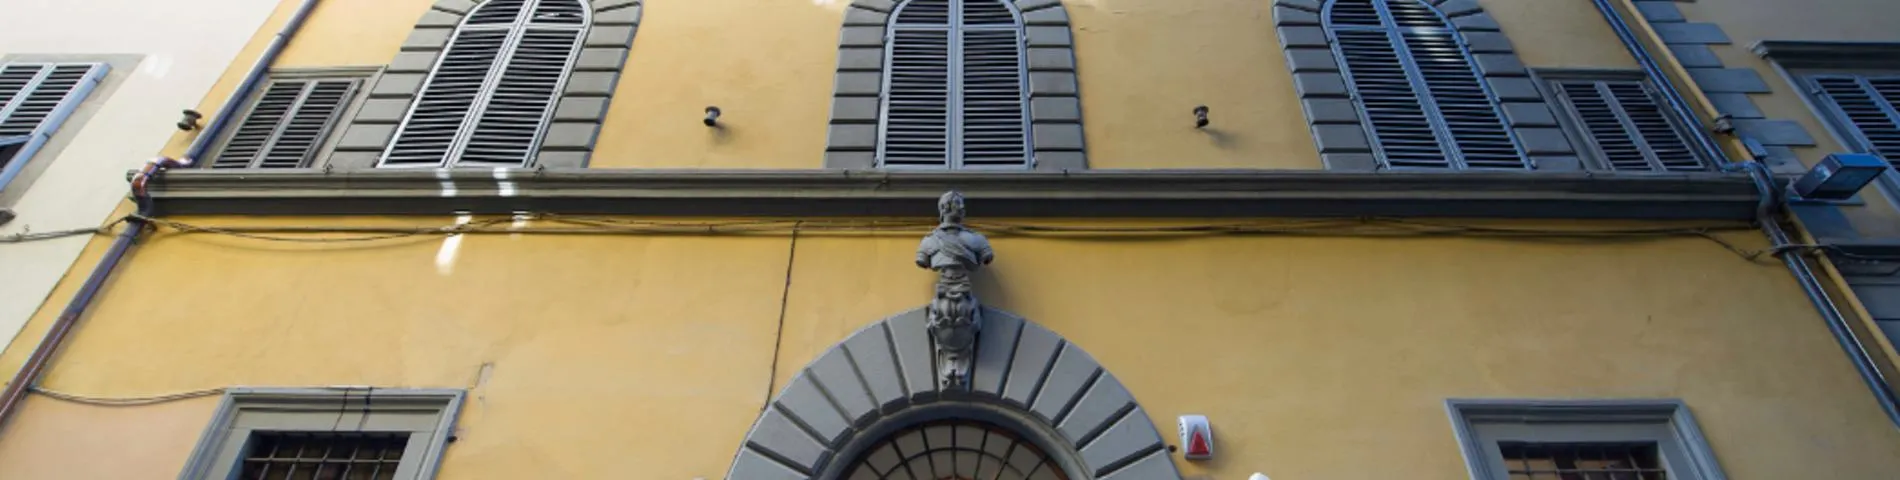 Scuola Lorenzo de Medici bilde 1